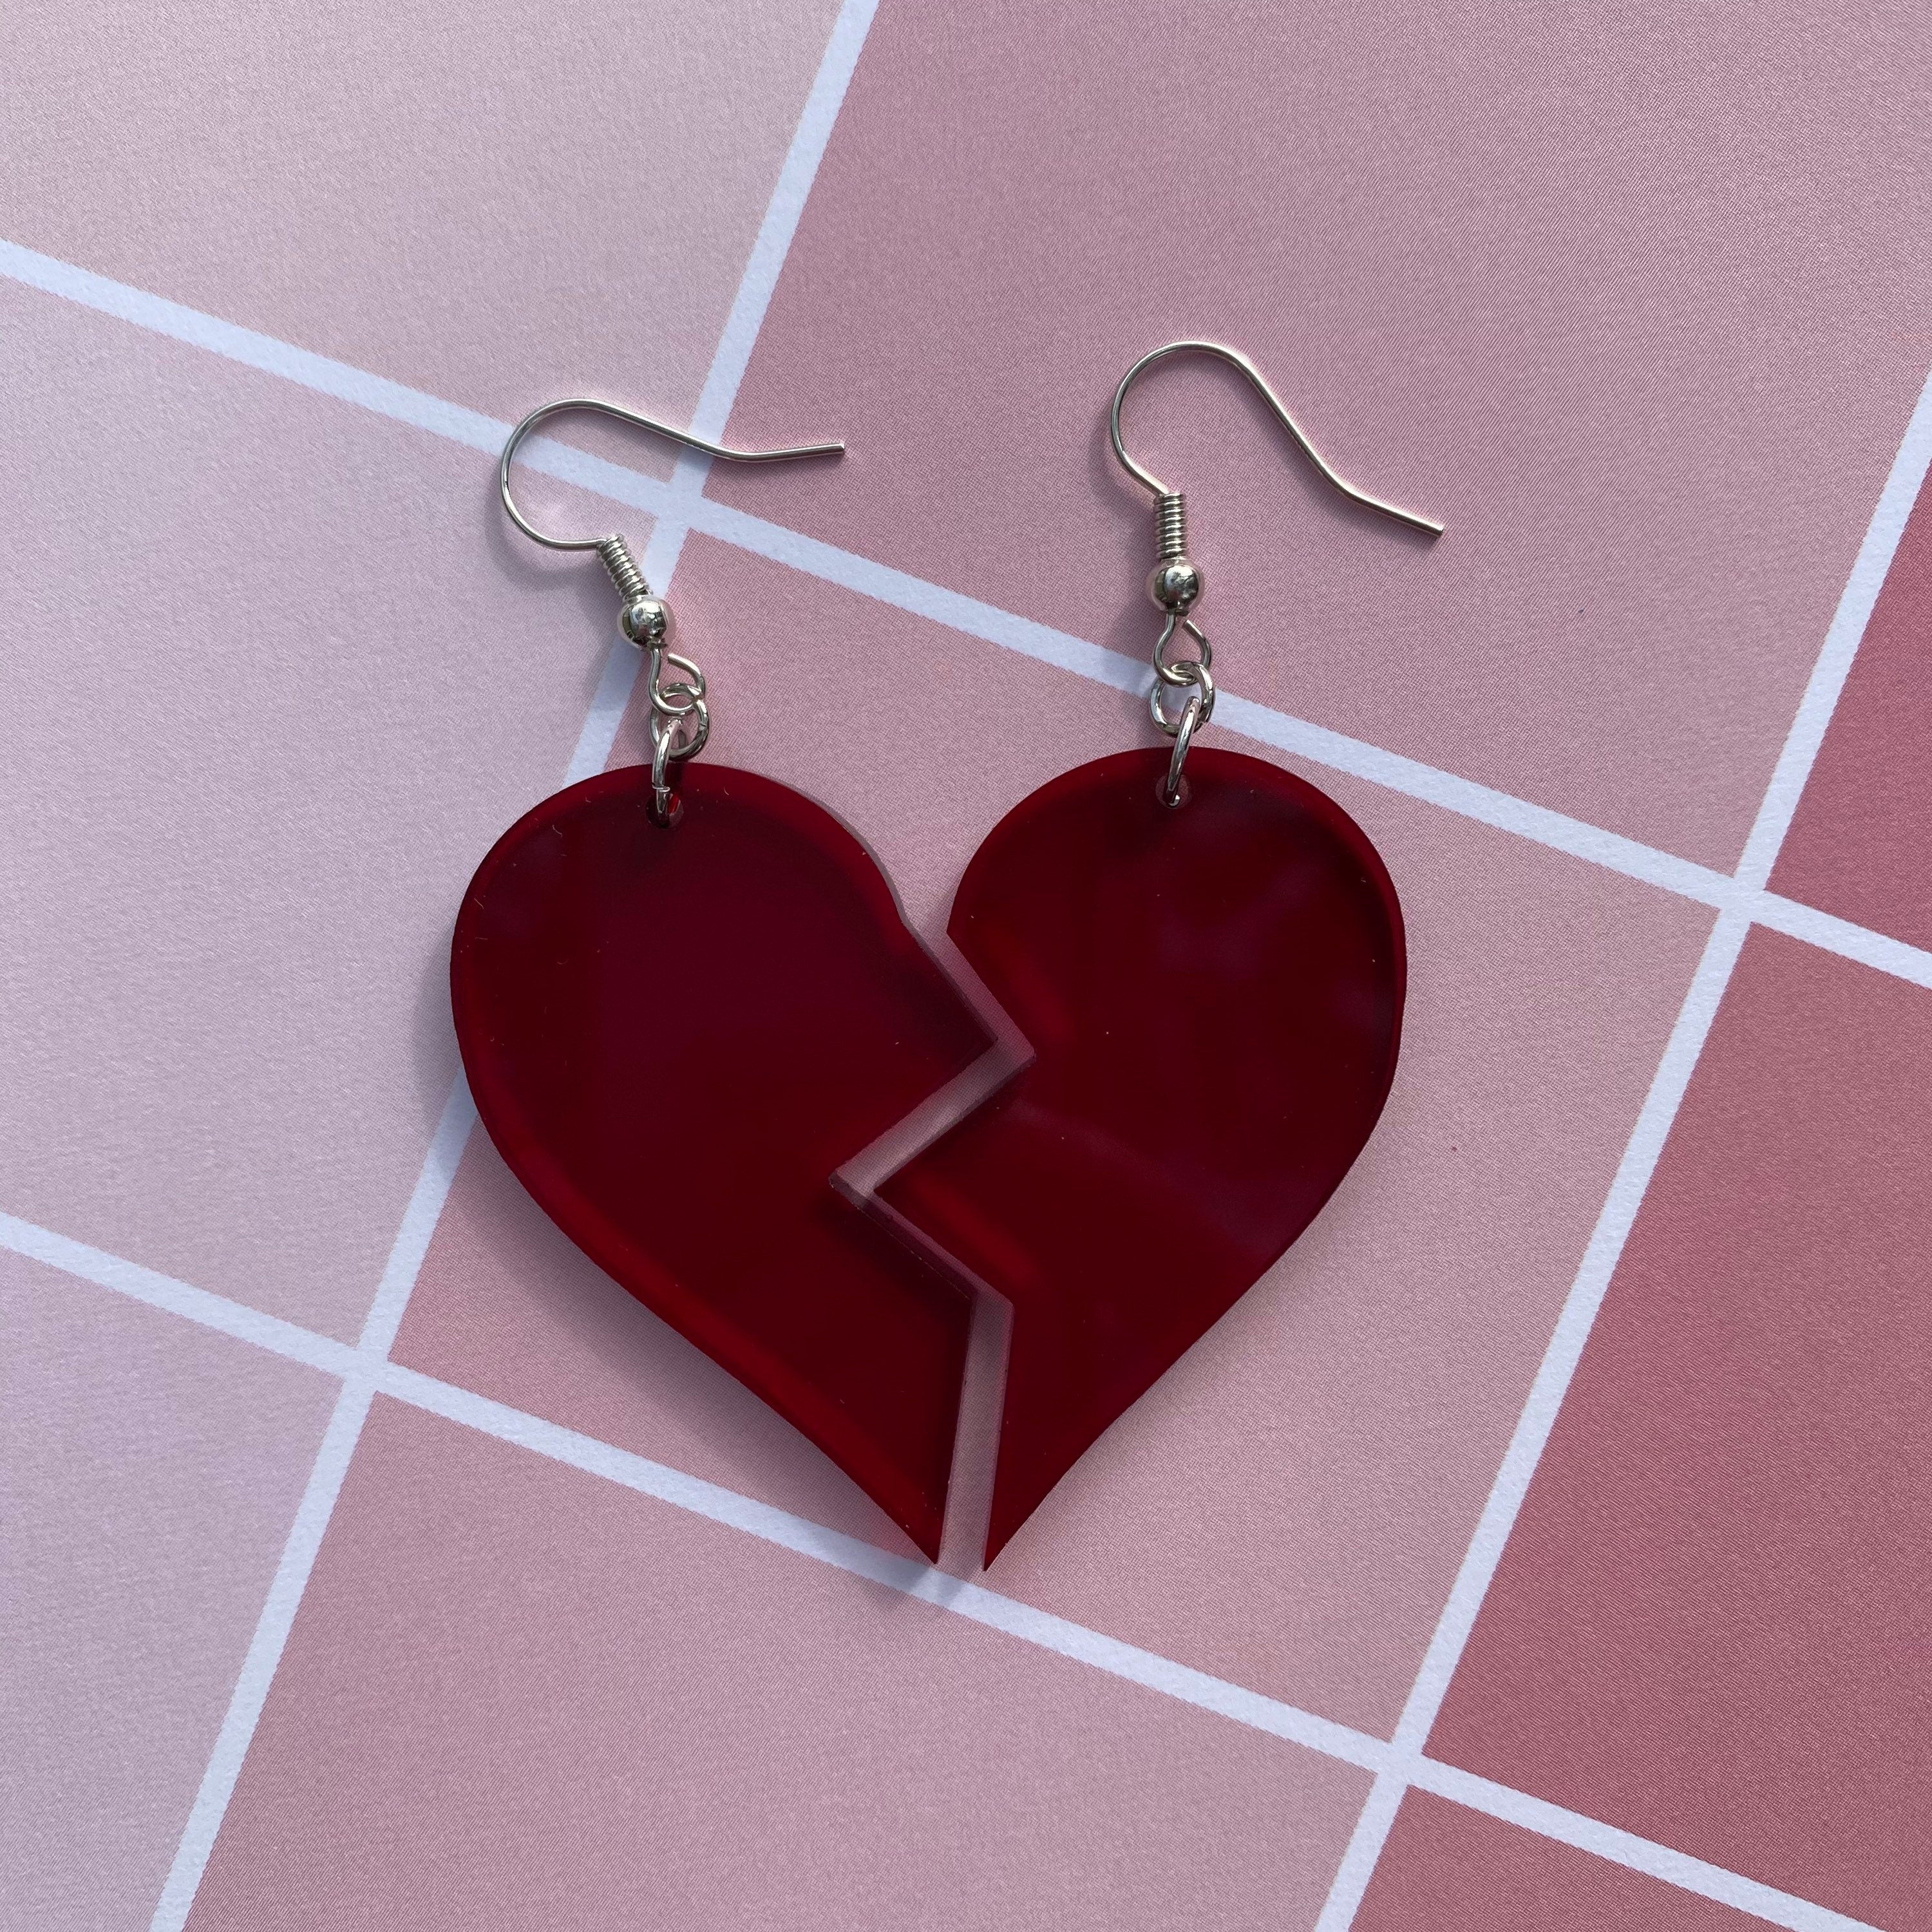 Cut My Heart Earring / Bleeding Heart Earrings / Razor Blade Earrings Handmade Jewellery Earrings